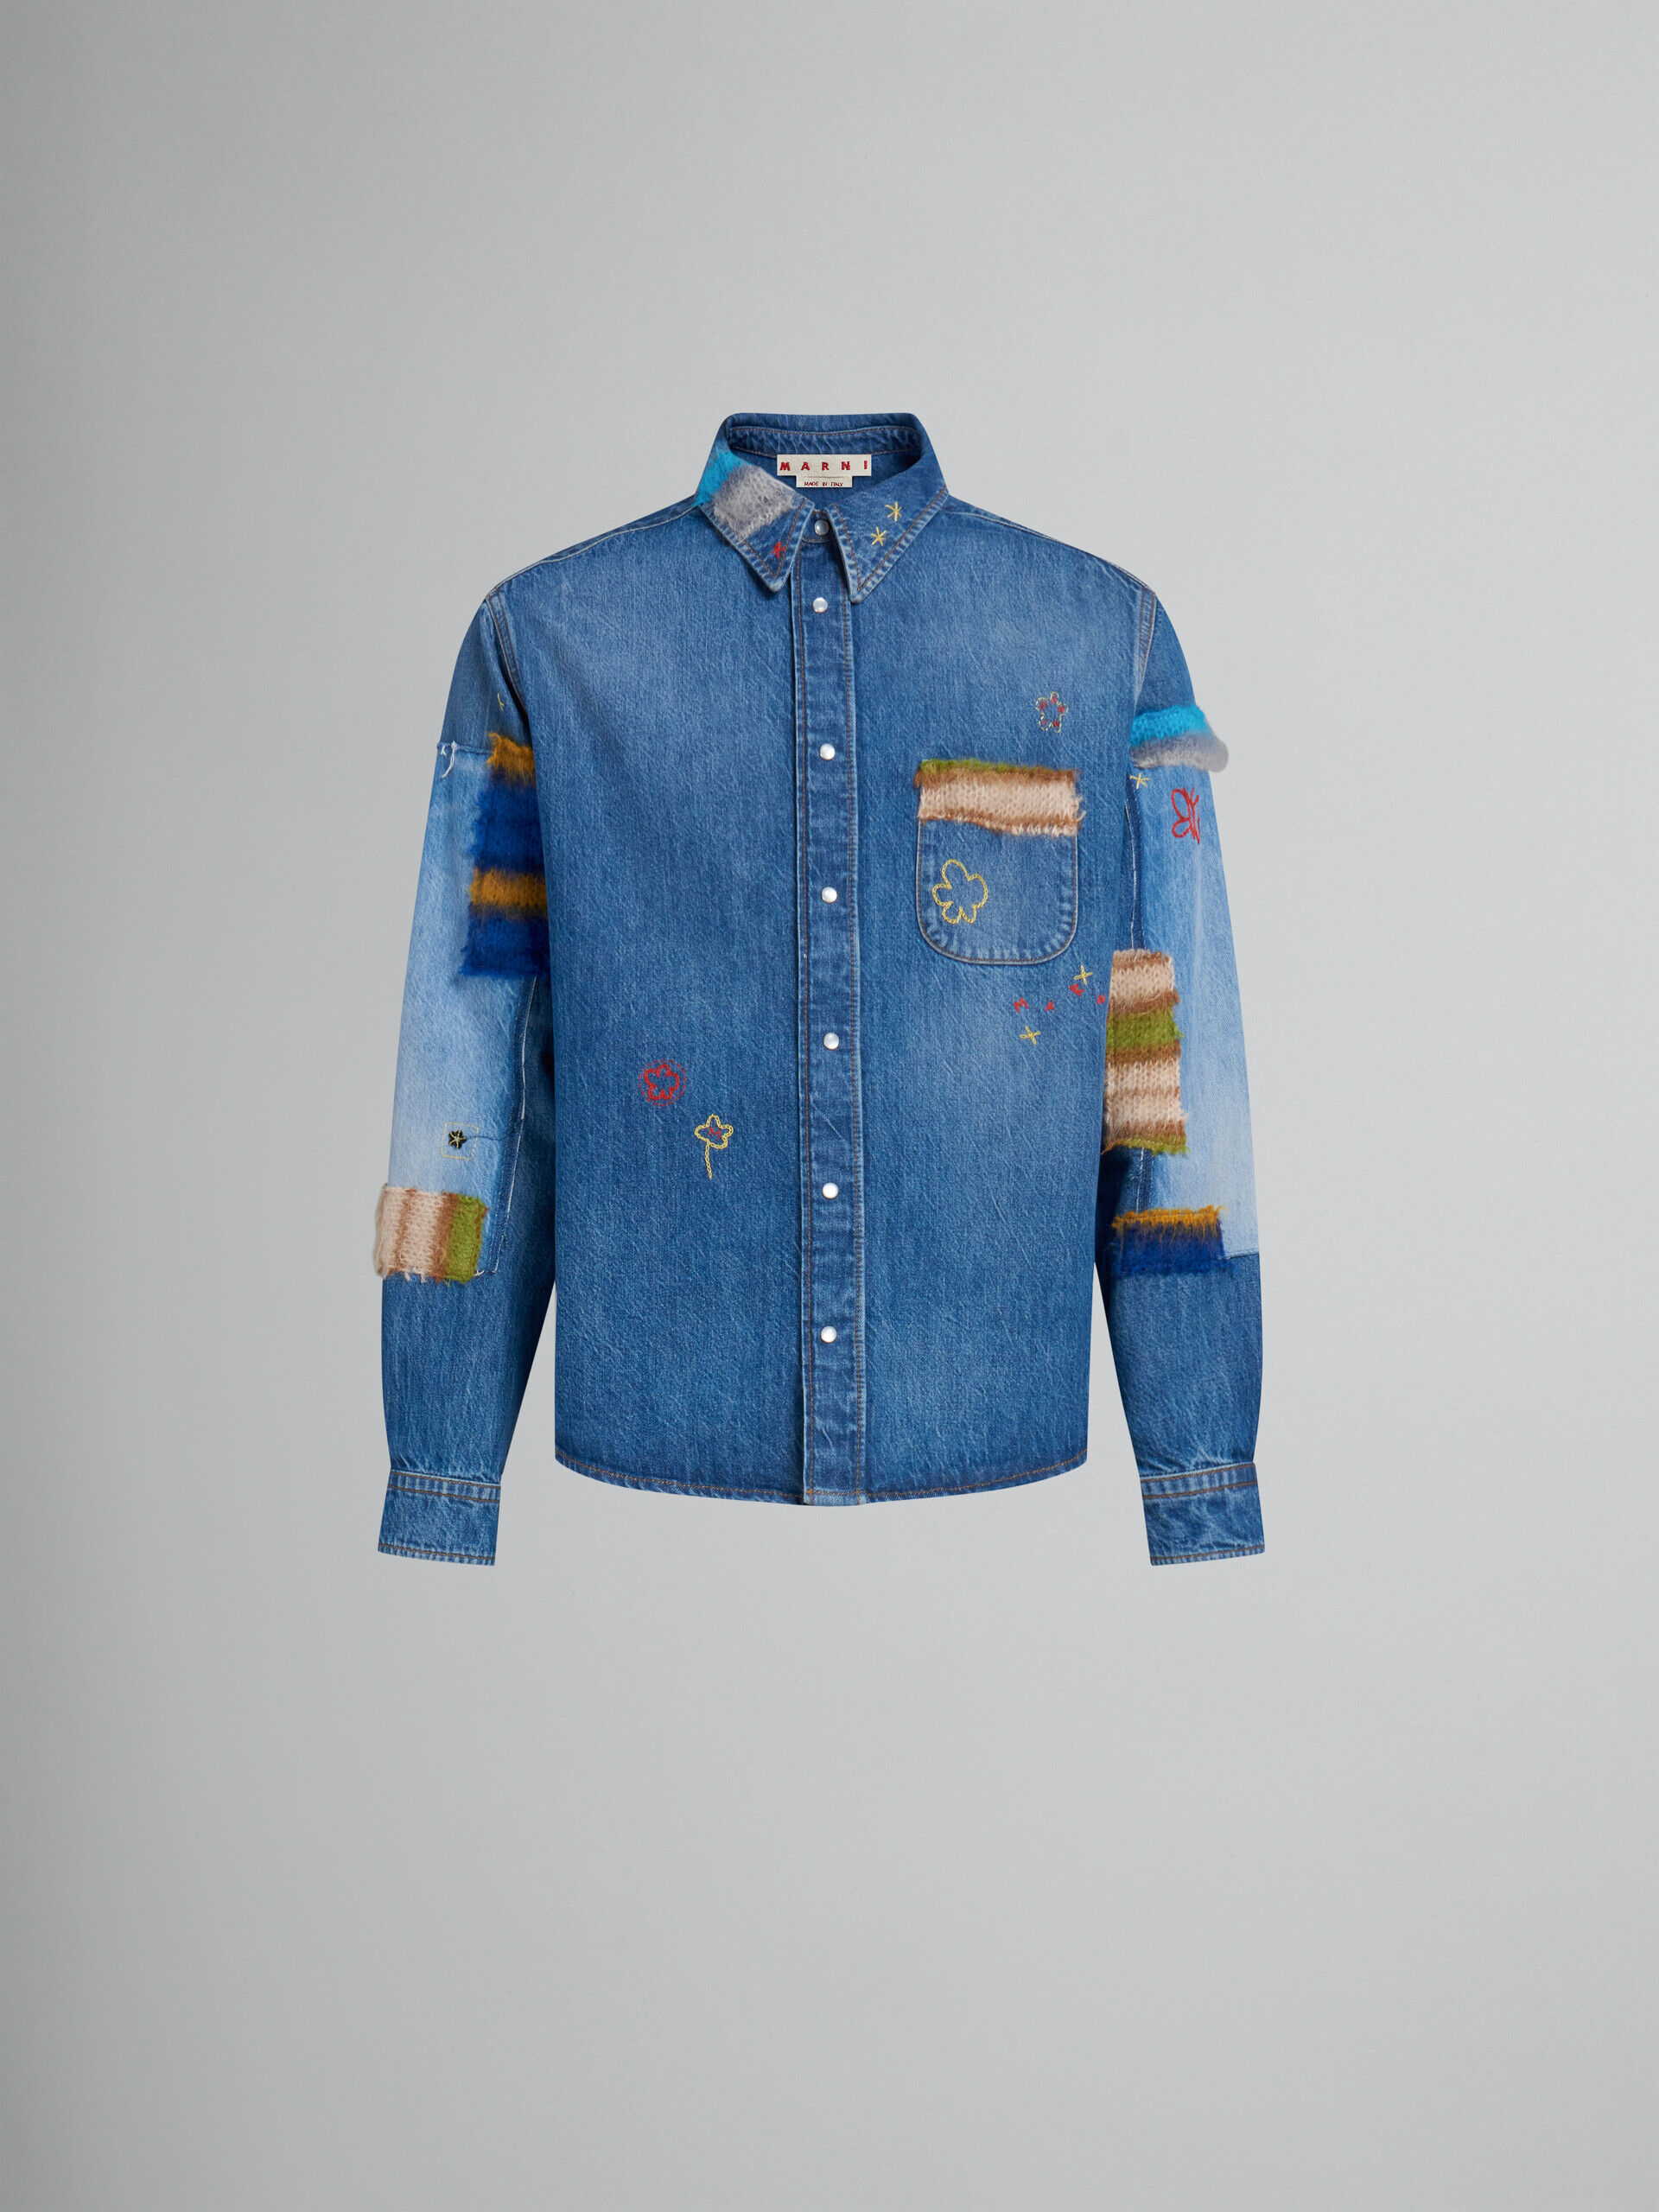 ブルー オーガニックデニム製シャツ、モヘア製パッチ付き | Marni